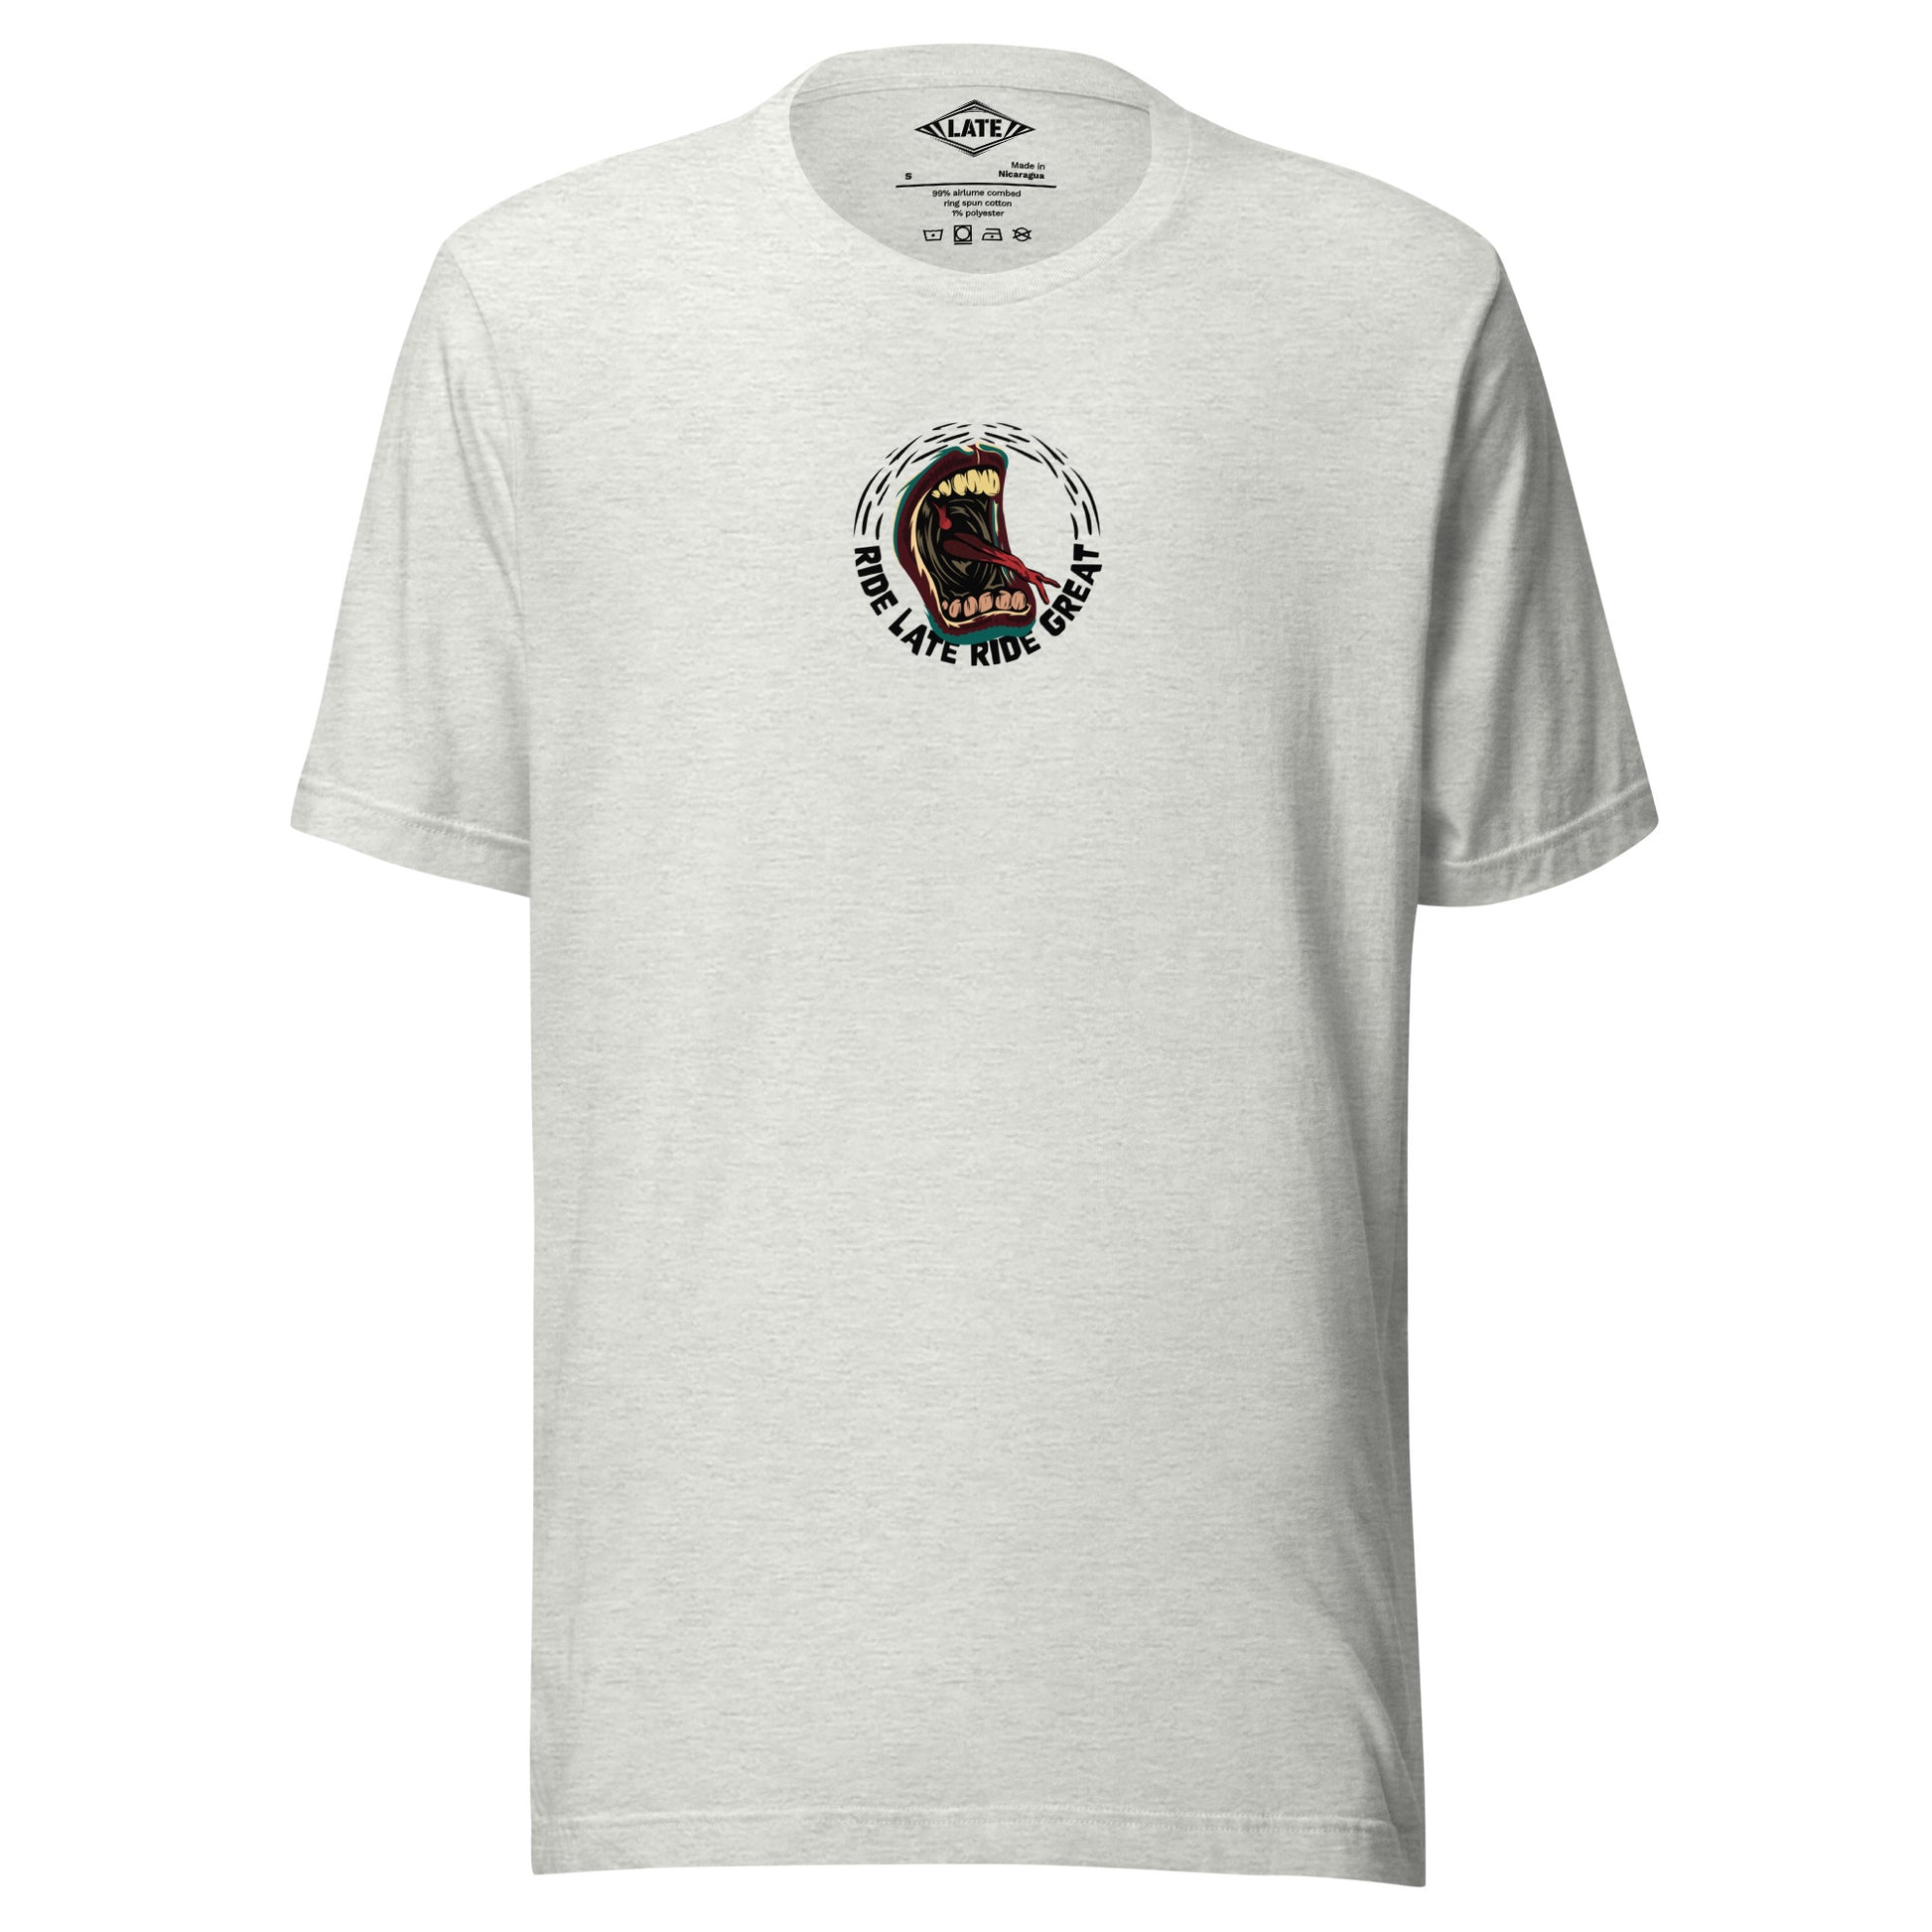 T-Shirt Ride Late Live Great skate style volcom avec un design de bouche qui tire la langue couleur du t-shirt unisex gris